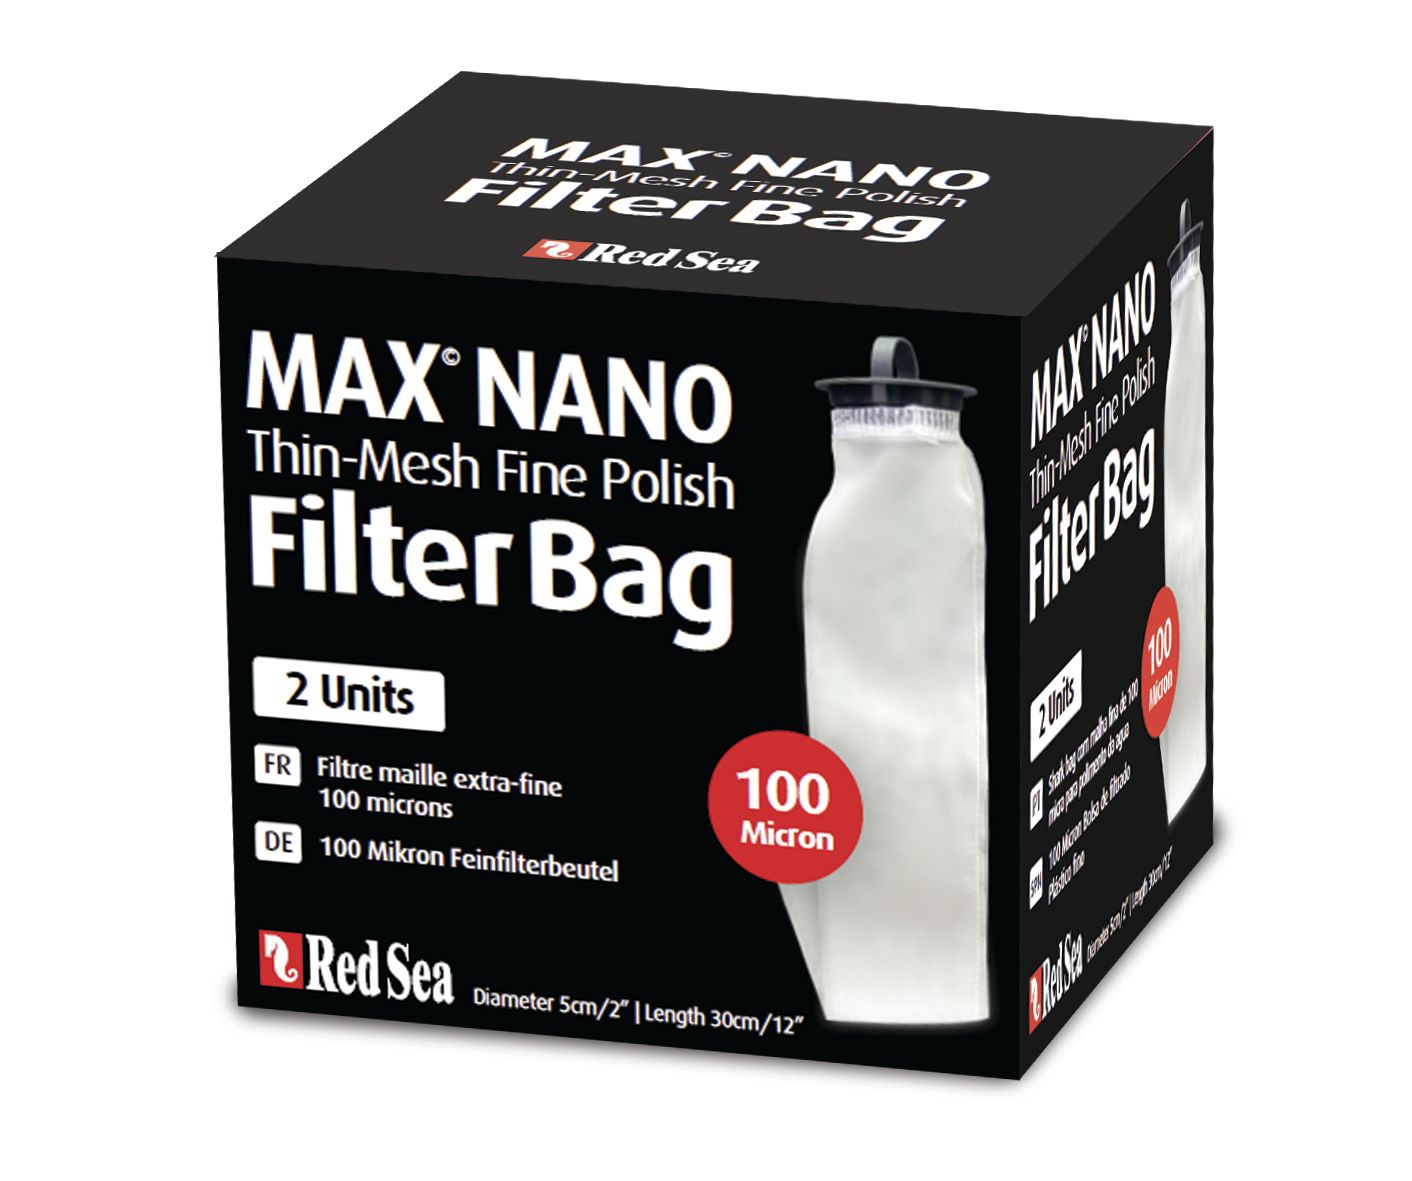 Red Sea Max Nano Thin-Mesh Filter Bag